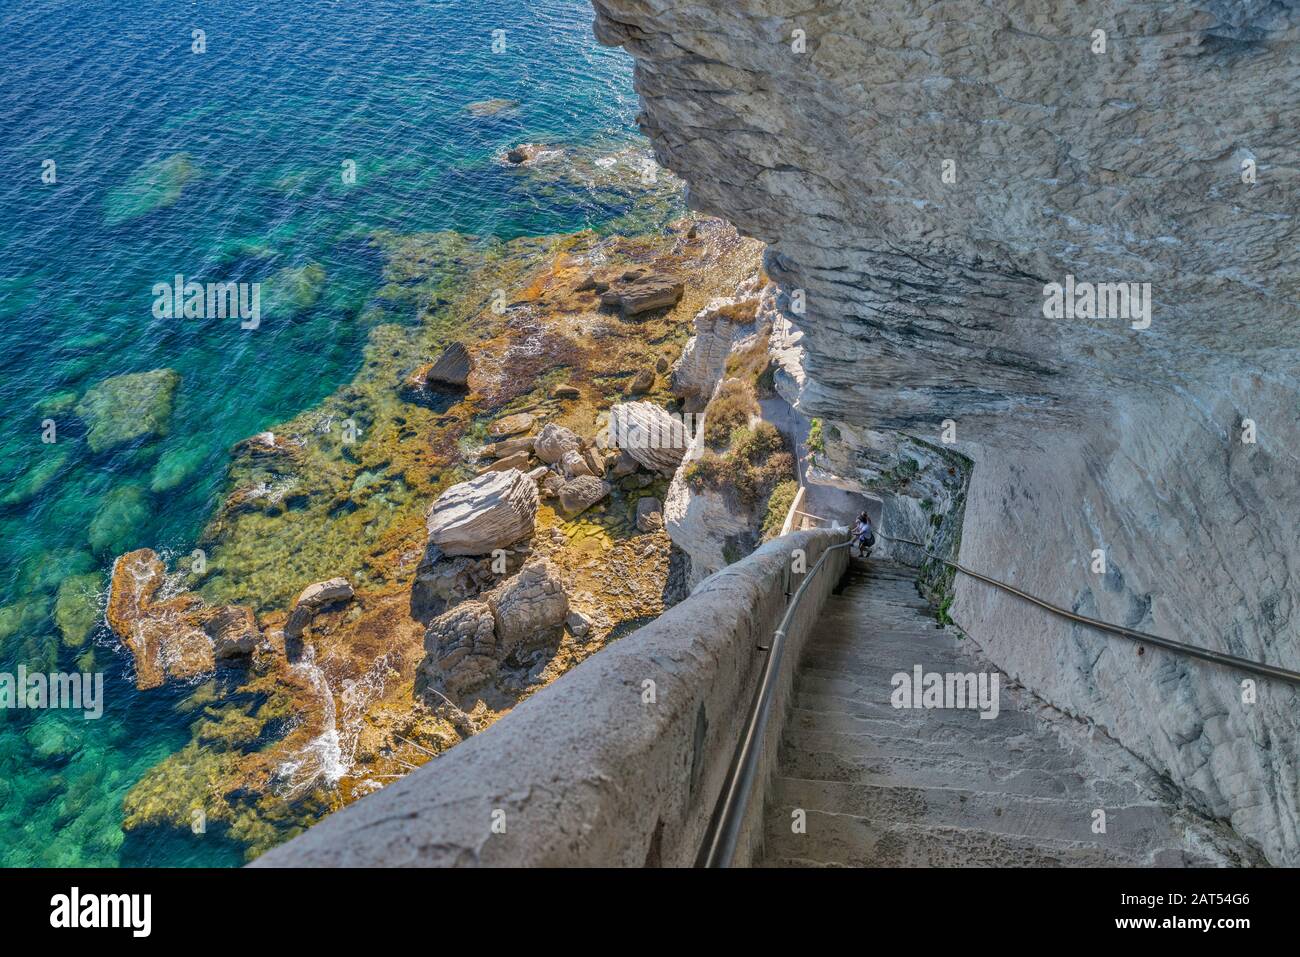 Escalier du roi d'Aragon (King Aragon Steps) cut in 1420 in limestone cliff over Strait of Bonifacio in Bonifacio, Corse-du-Sud, Corsica, France Stock Photo